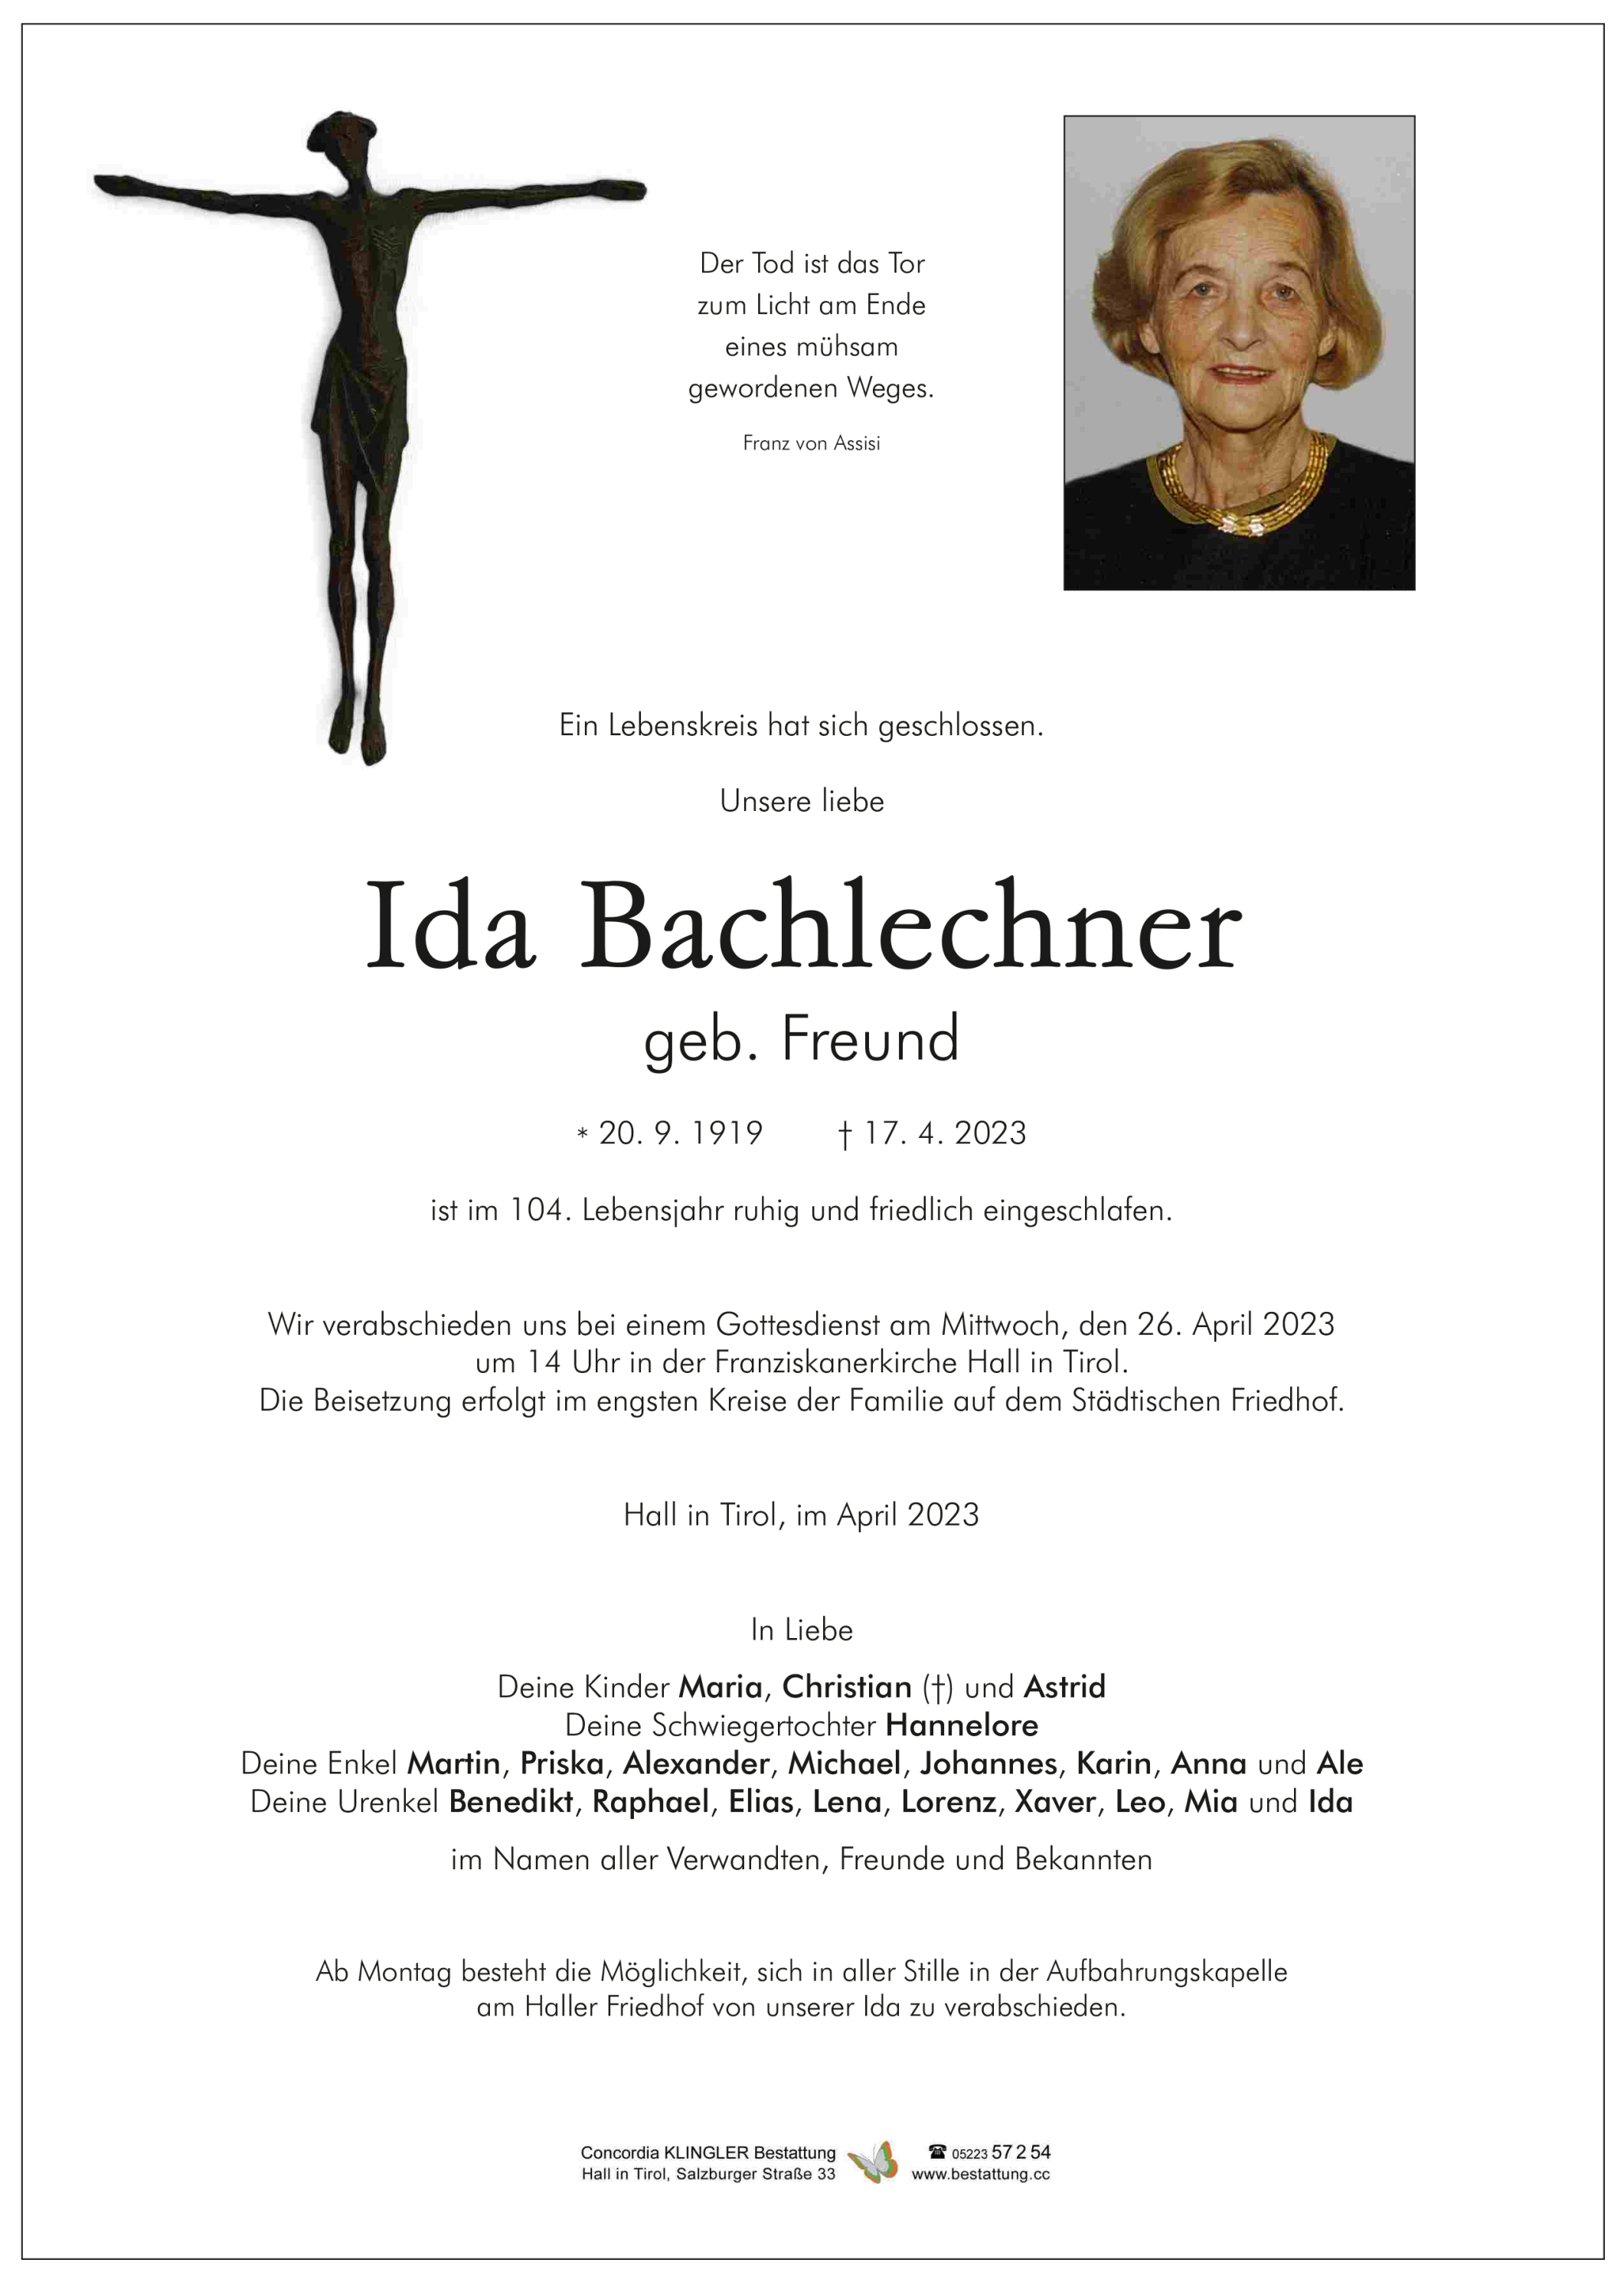 Ida Bachlechner